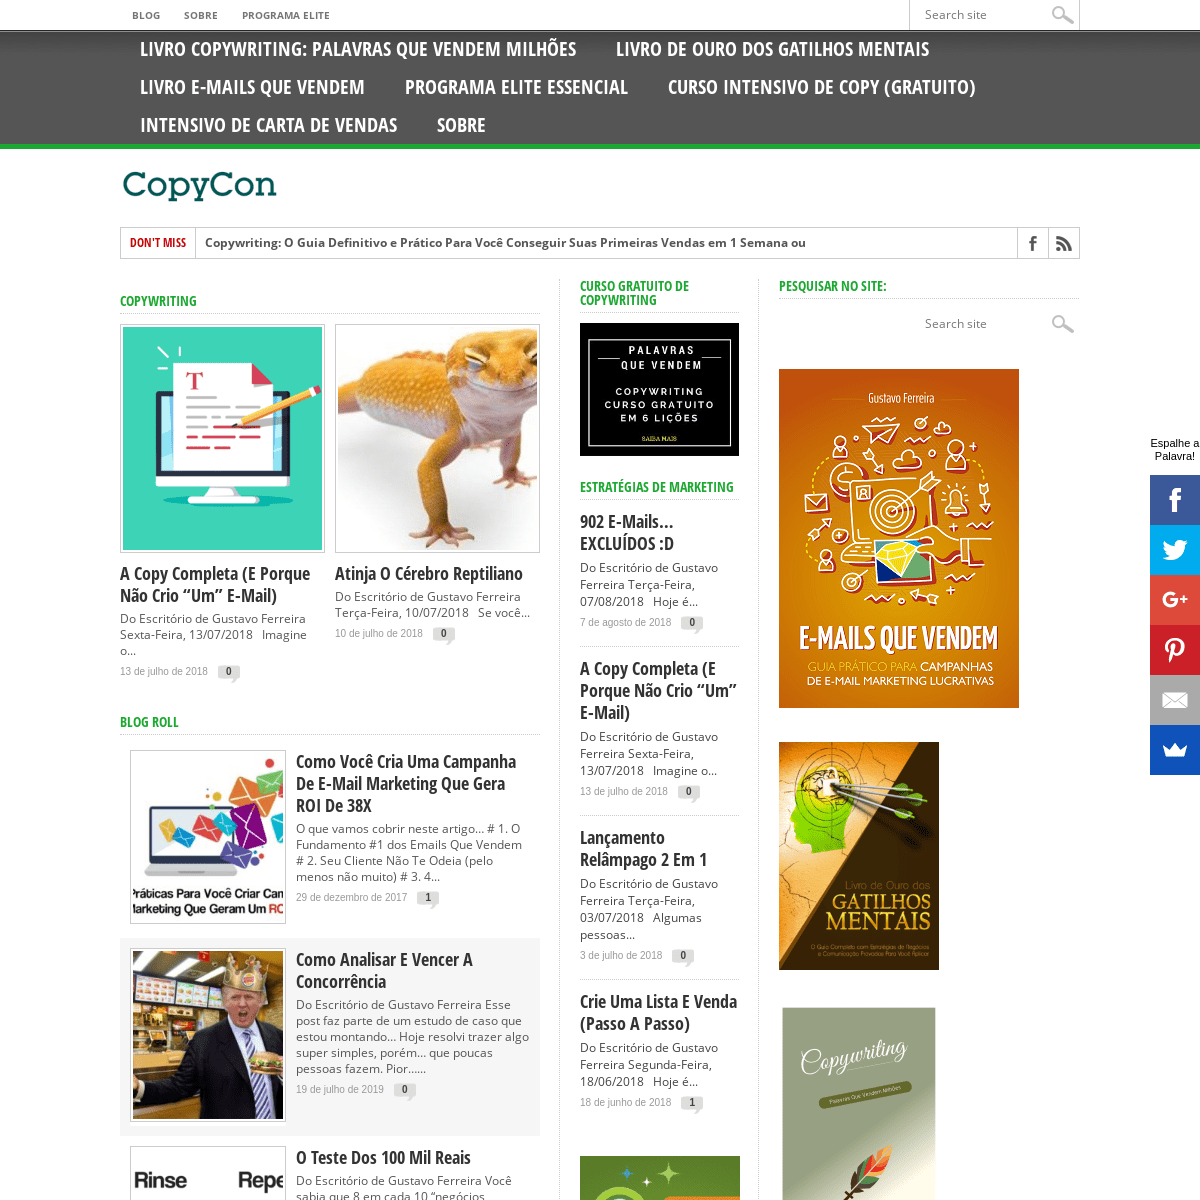 A complete backup of copycon.com.br